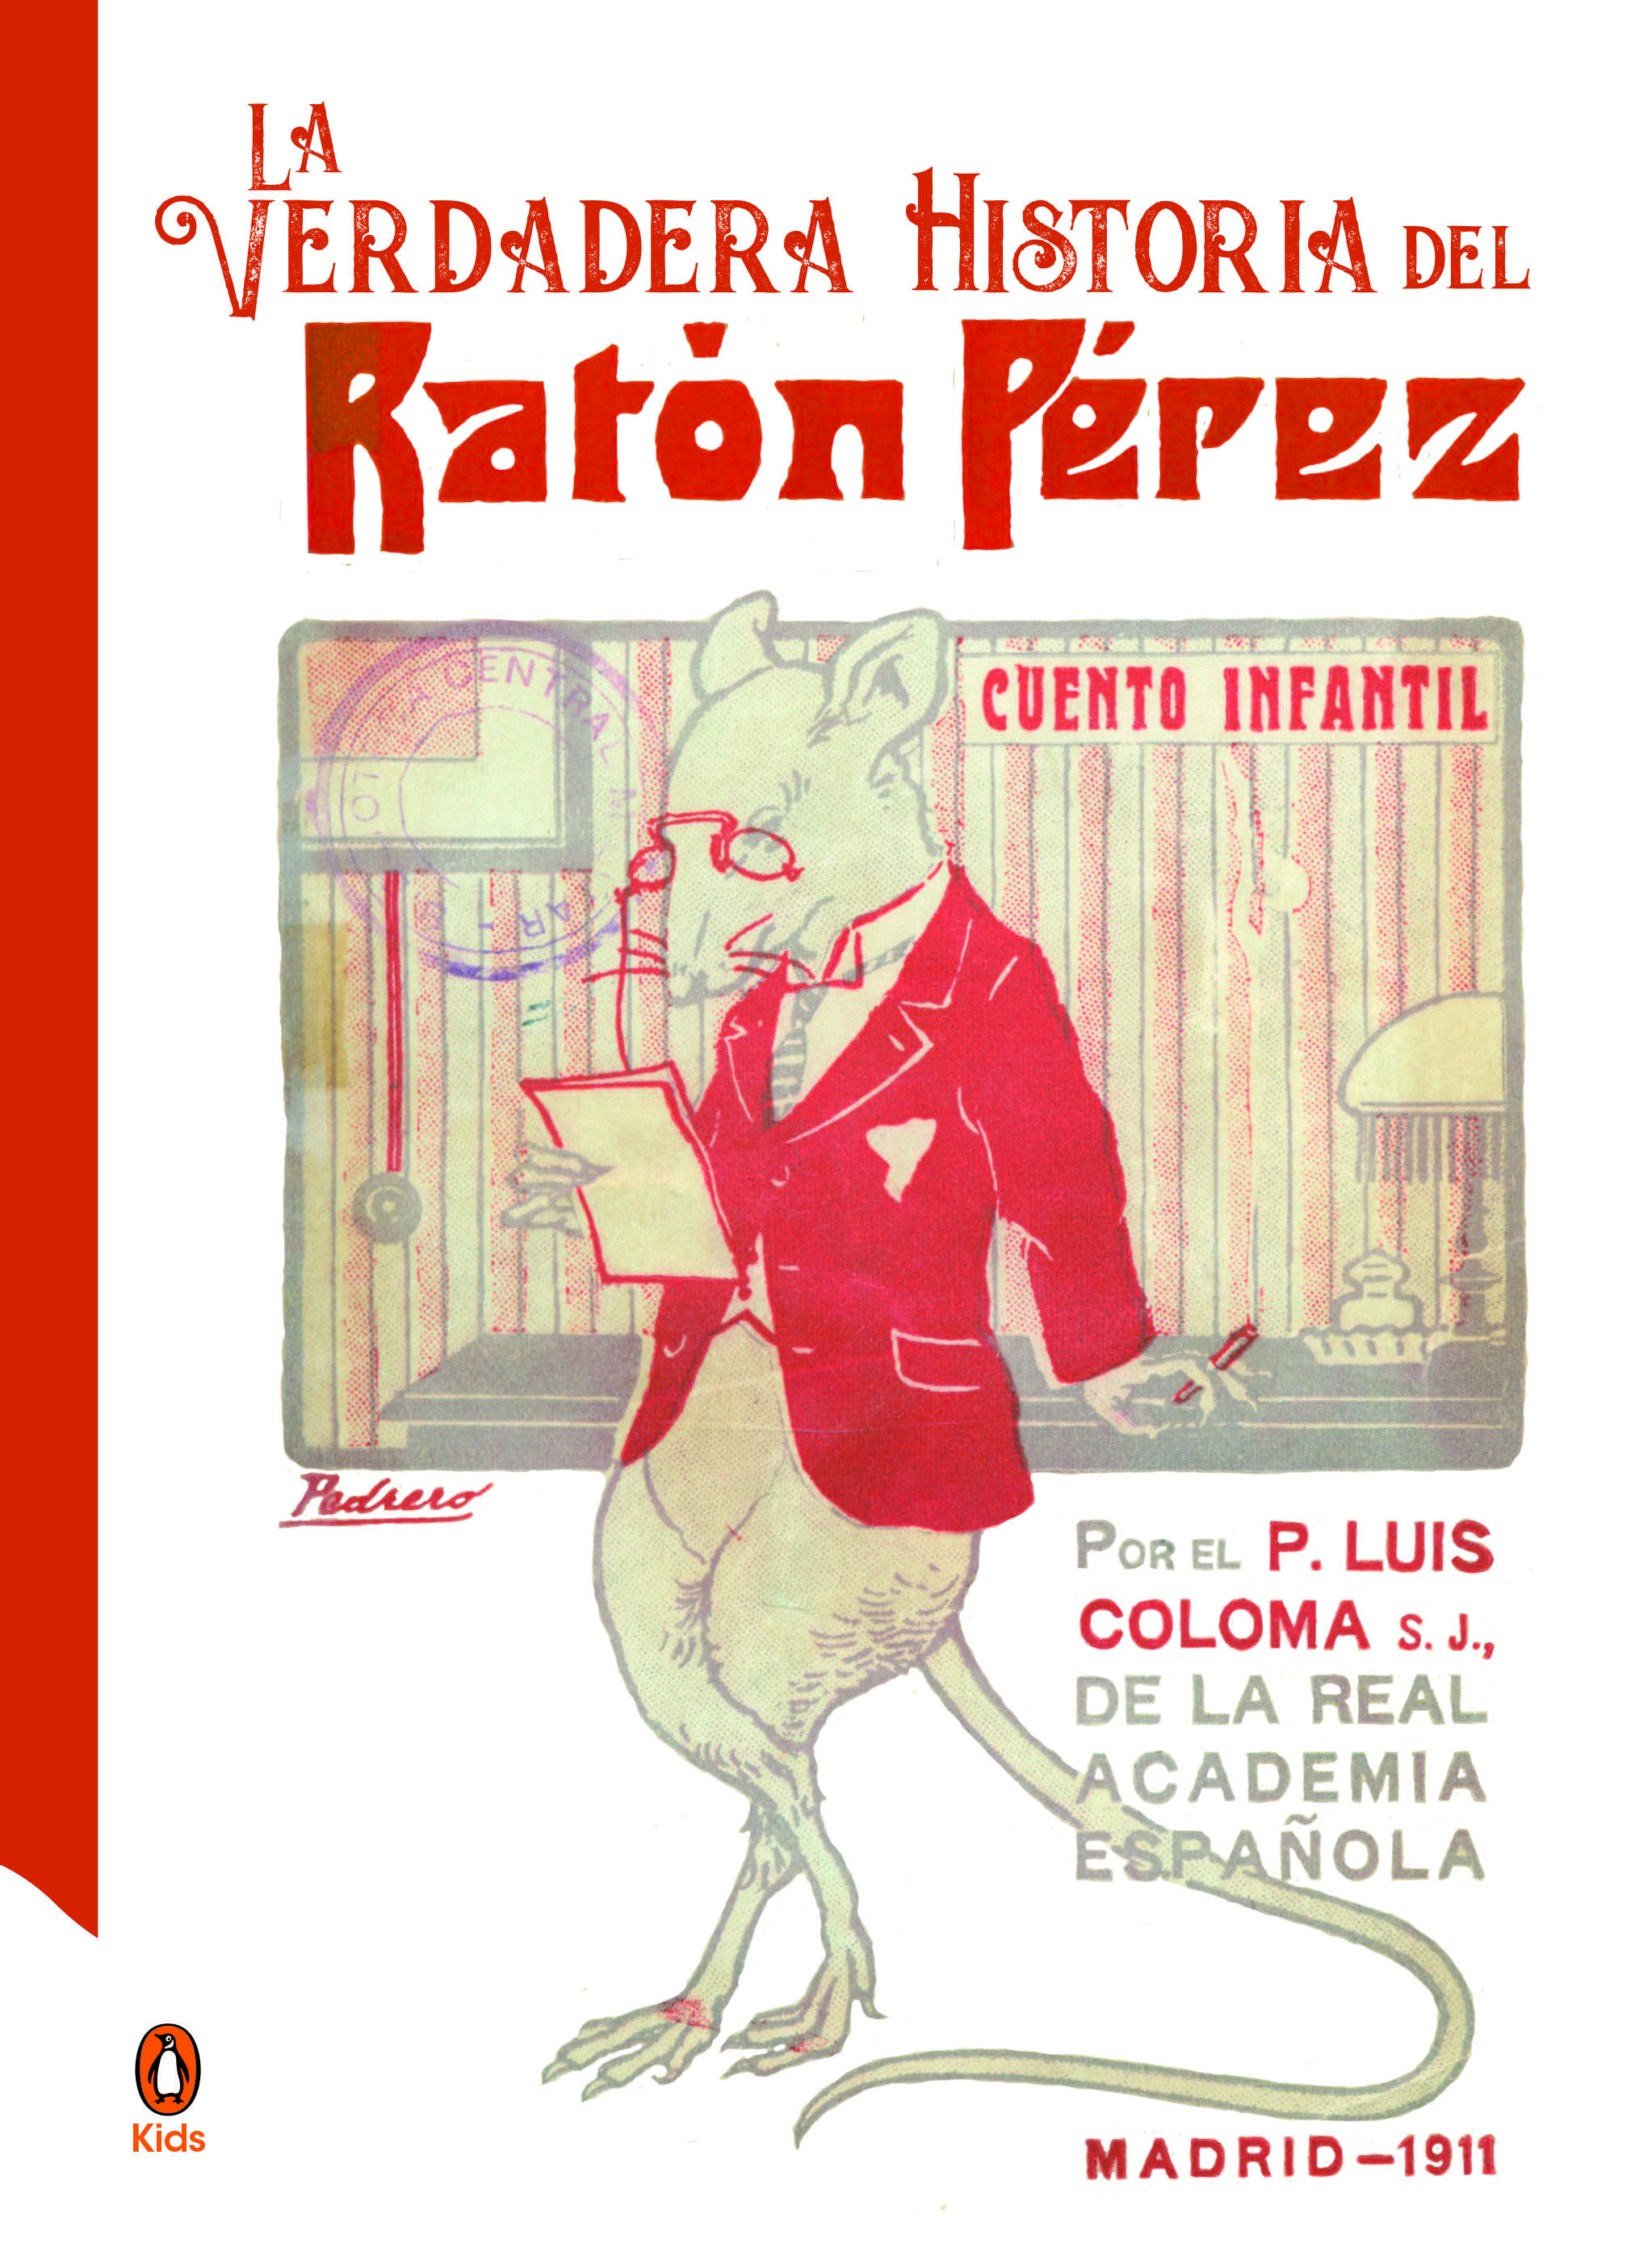 Portada de una edición reciente del Ratoncito Pérez.